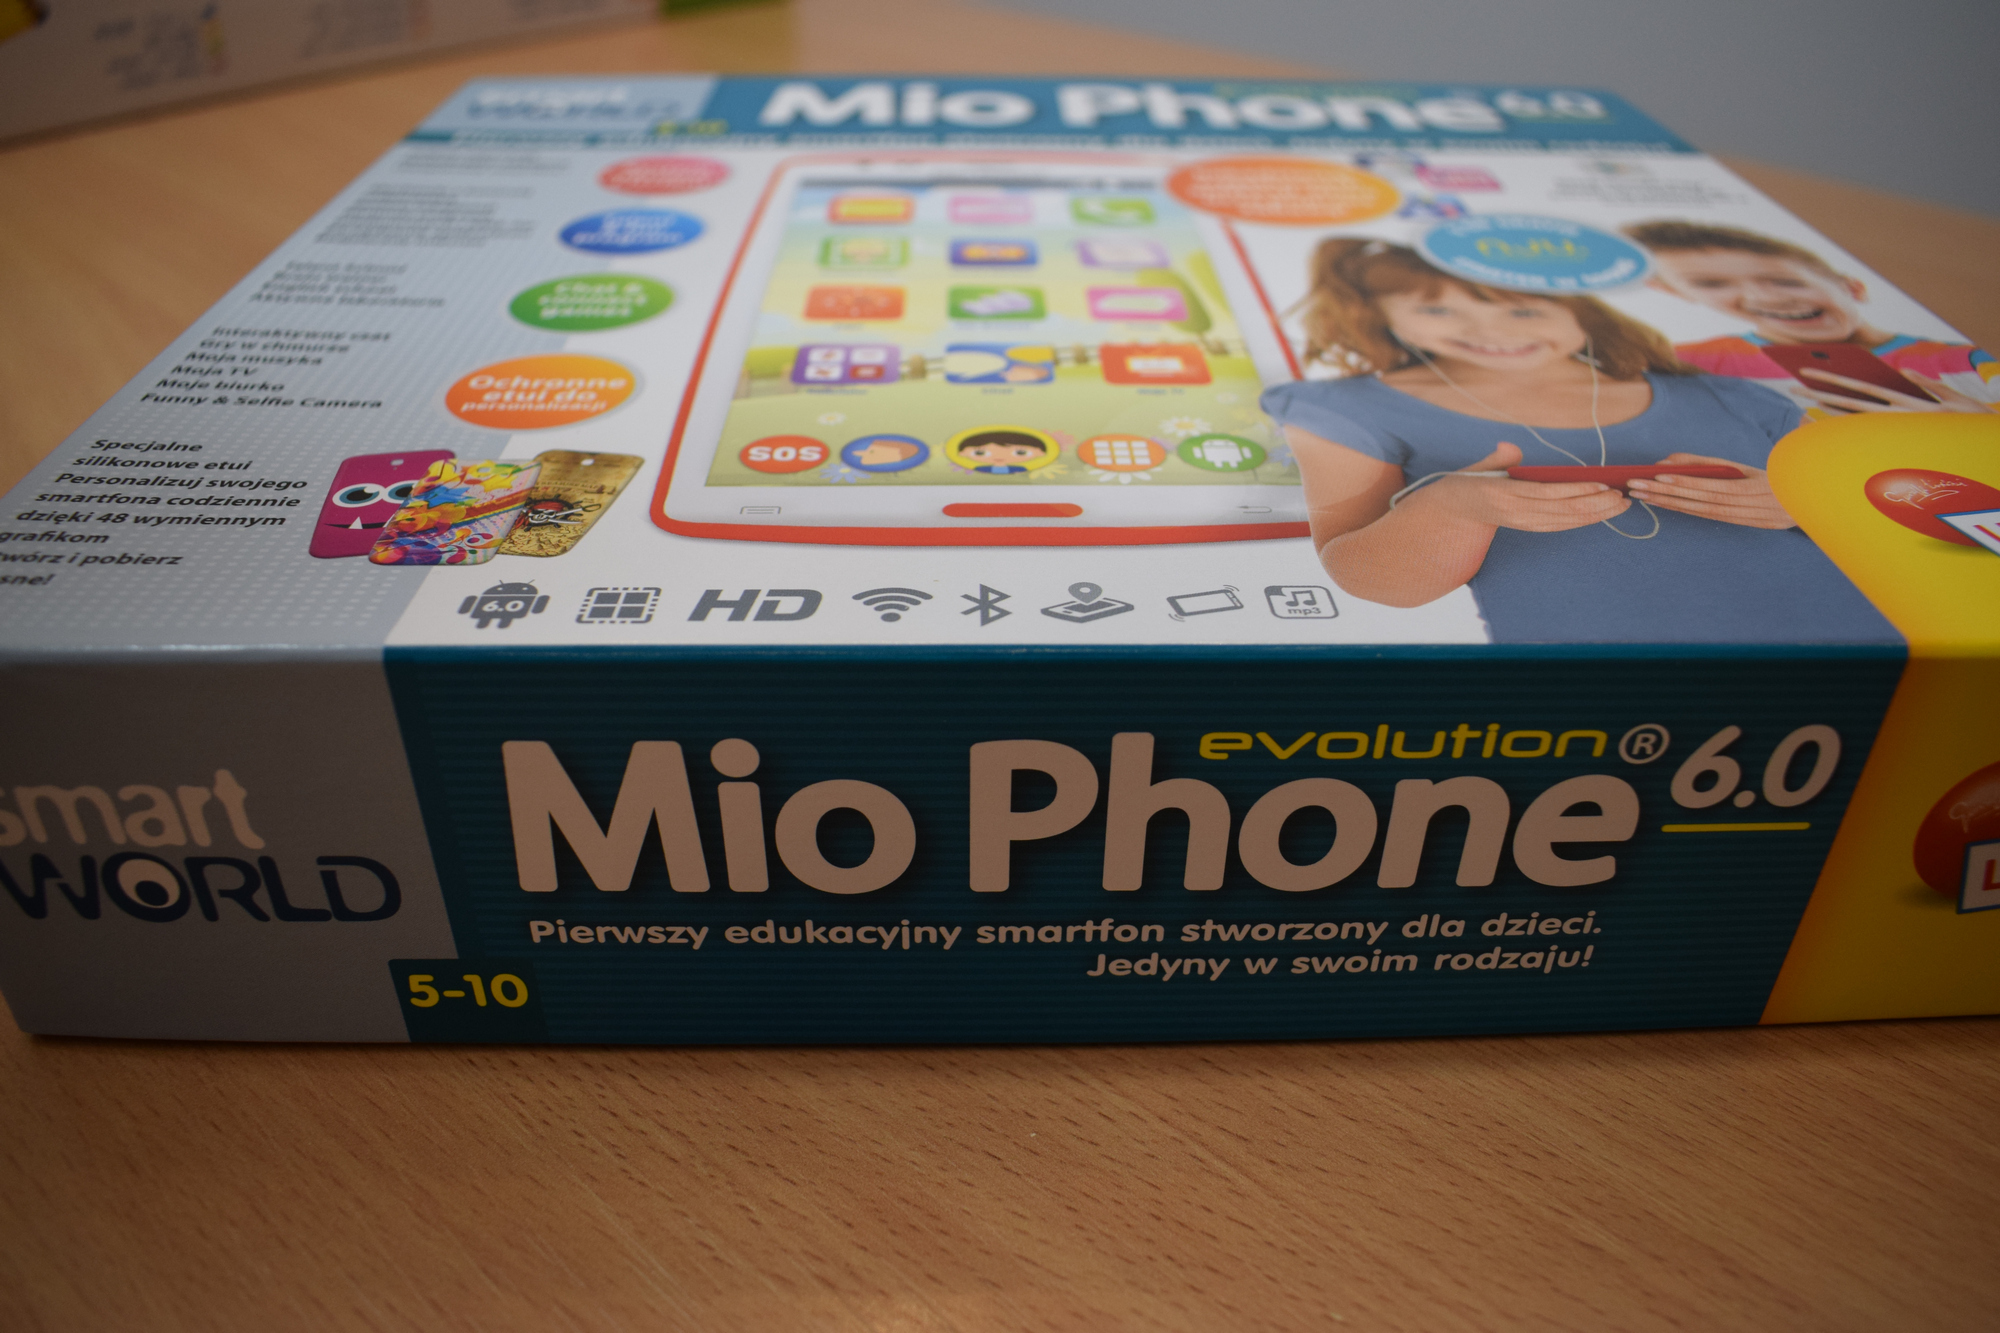 mip phone 6.0